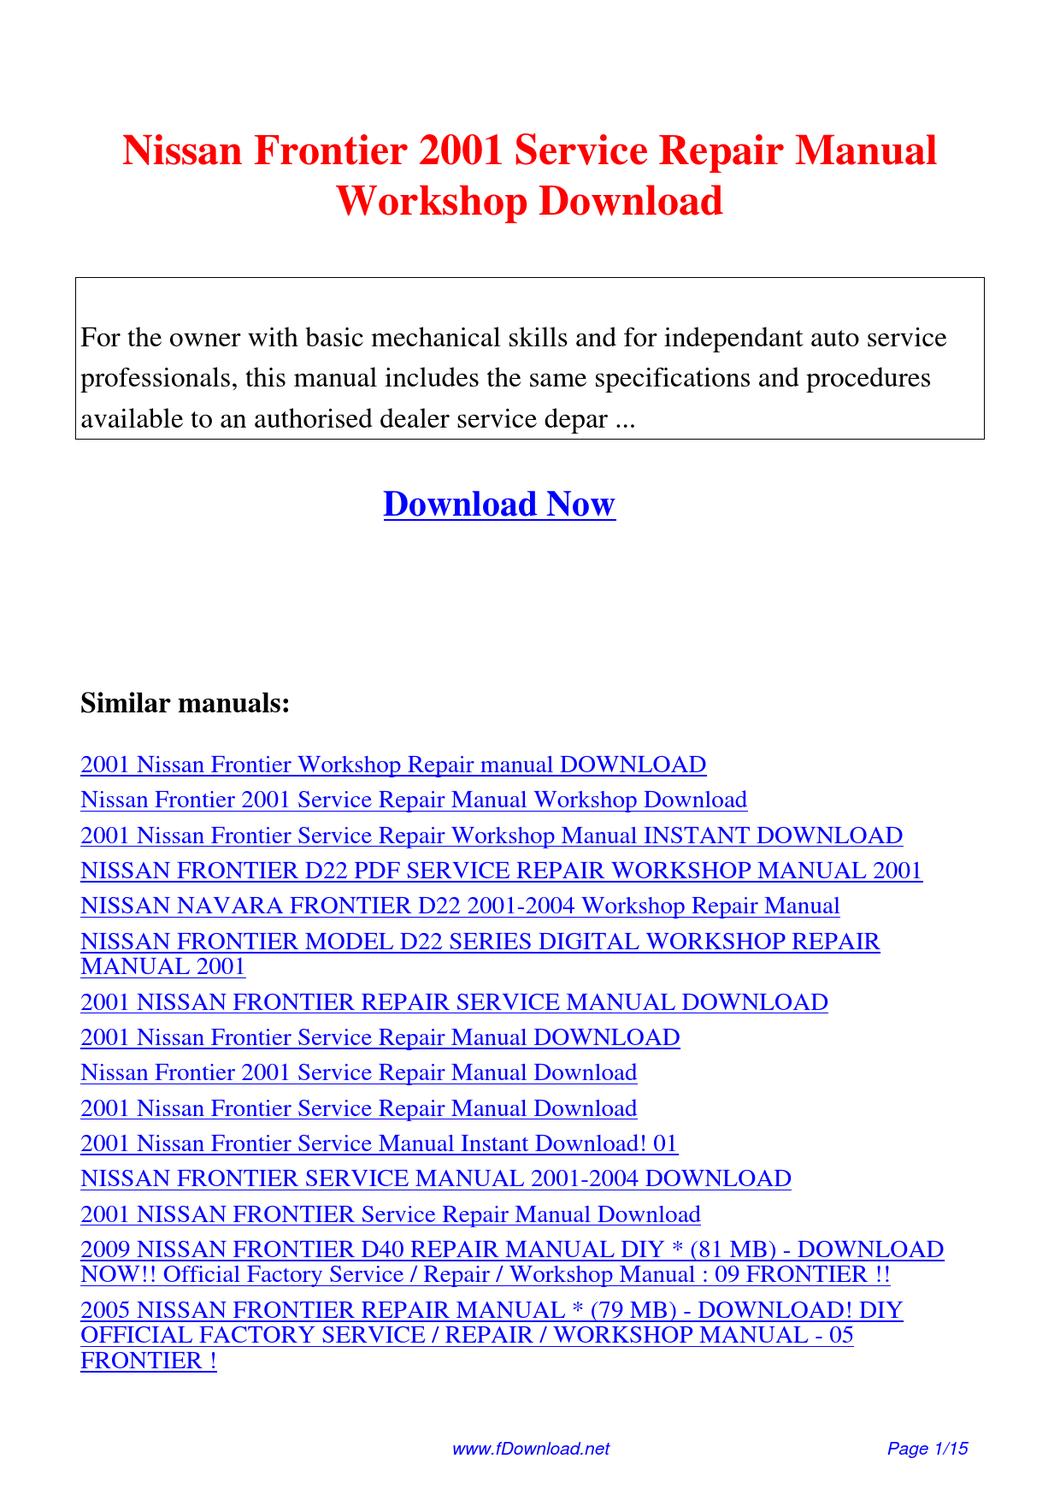 2001 nissan frontier repair manual pdf